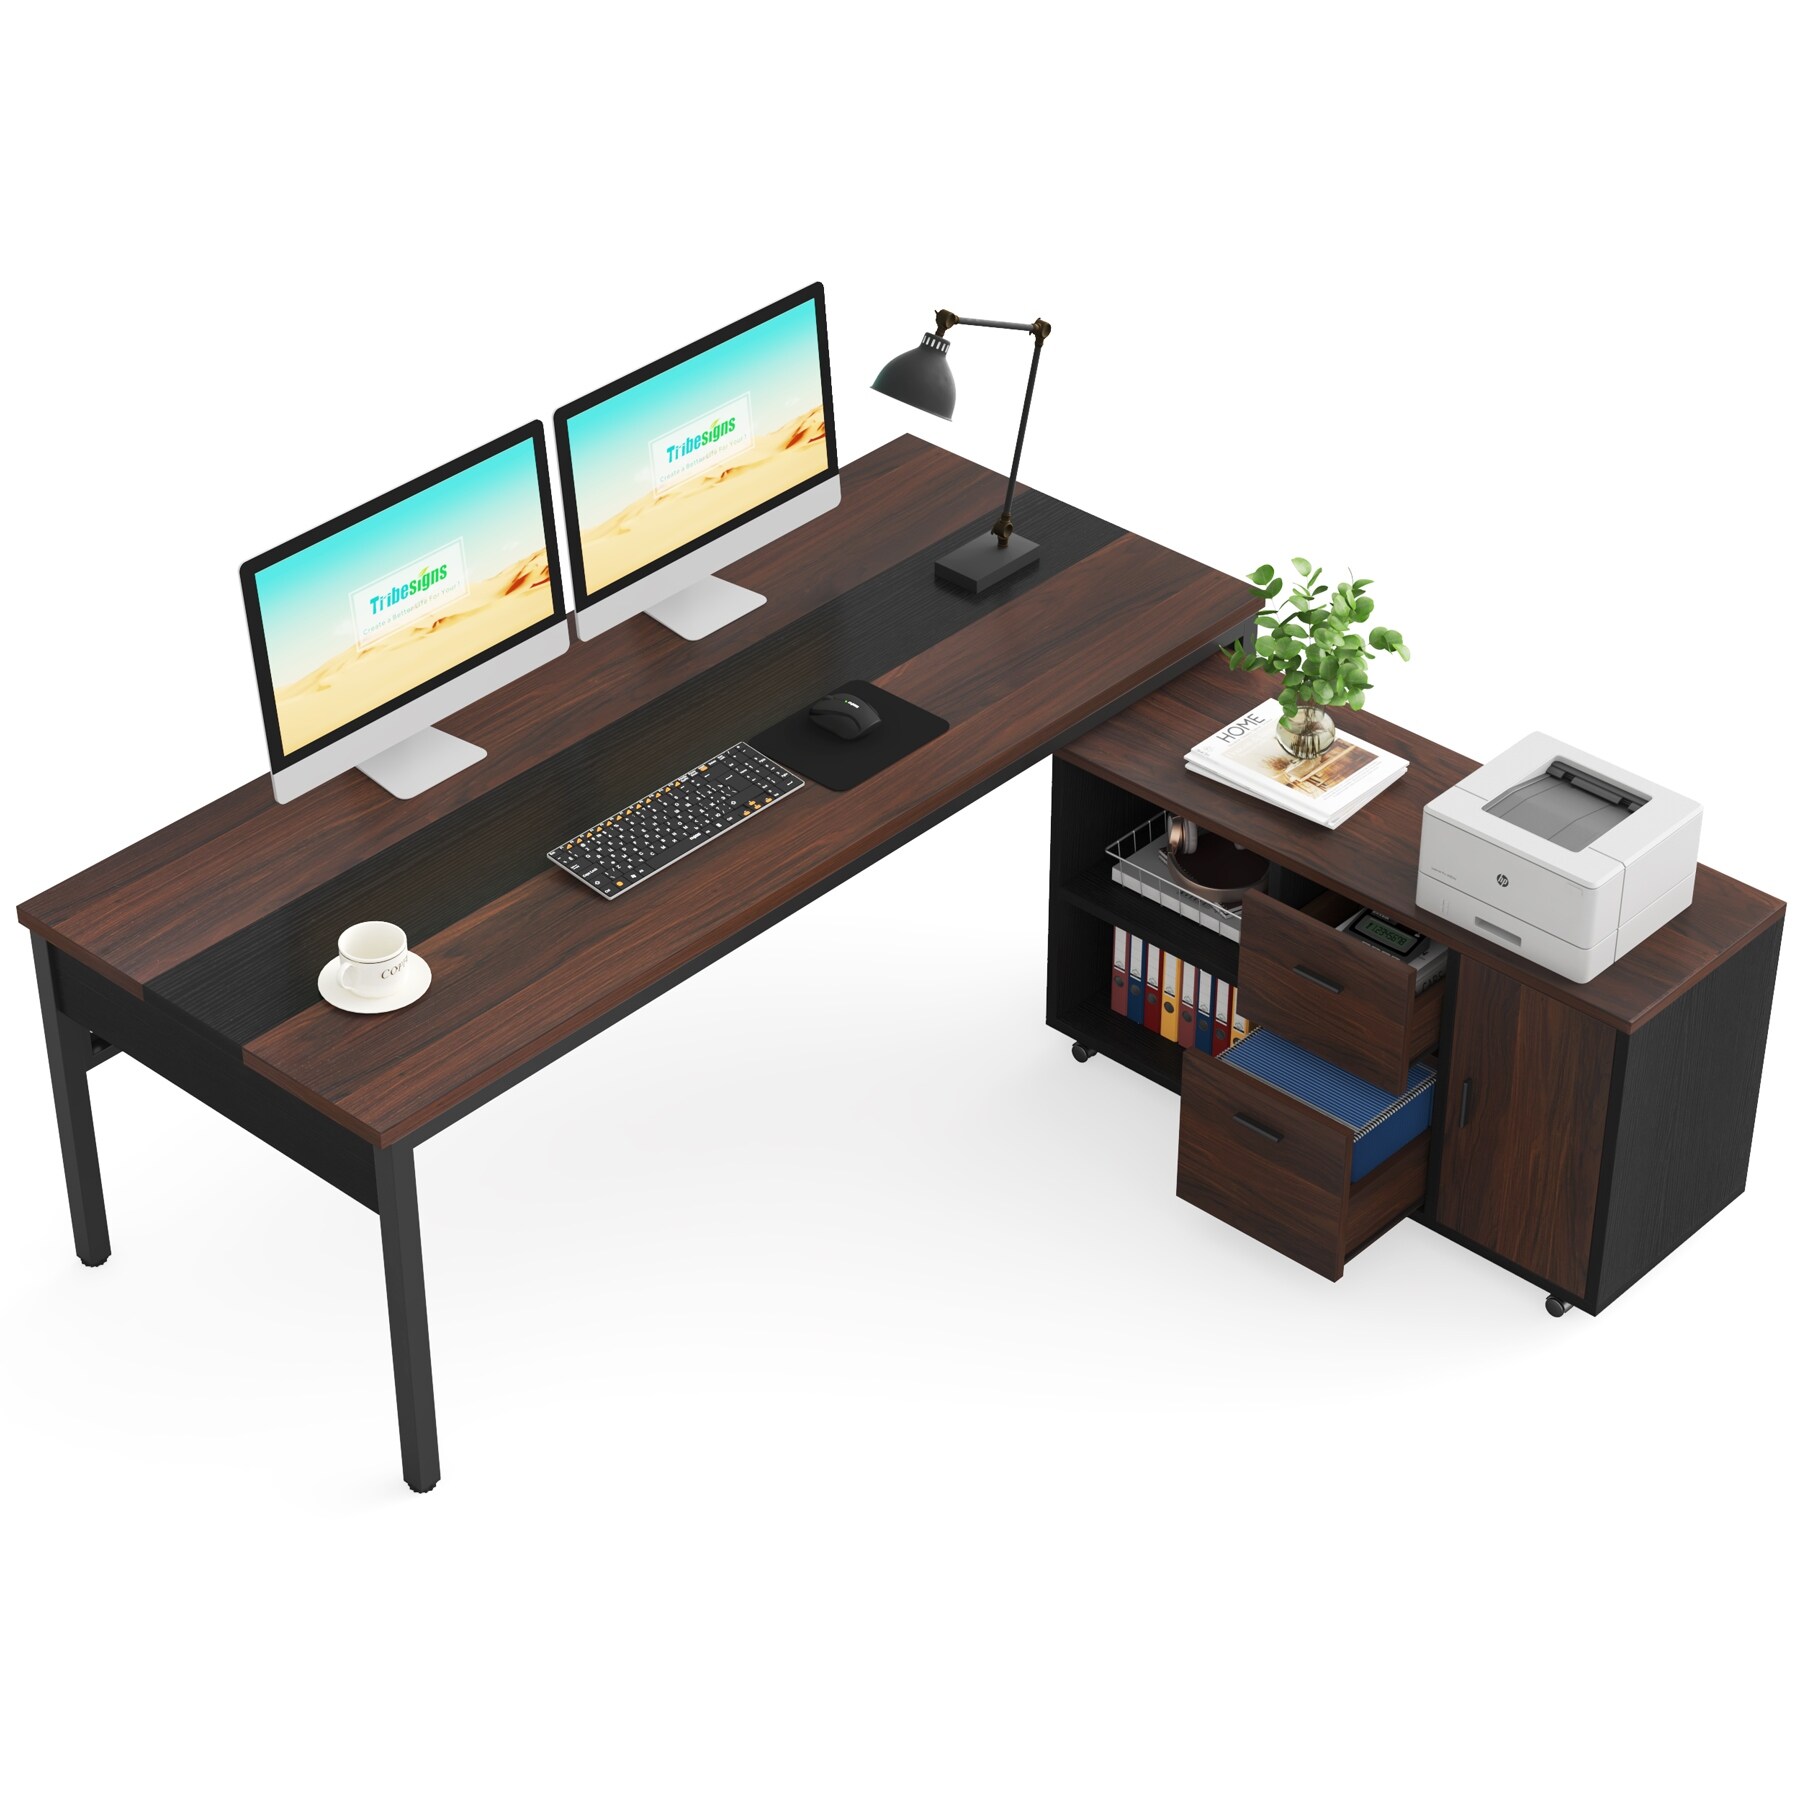 1.4 M. Office Desk @ HOG-Home, Office, Gaden Furniture